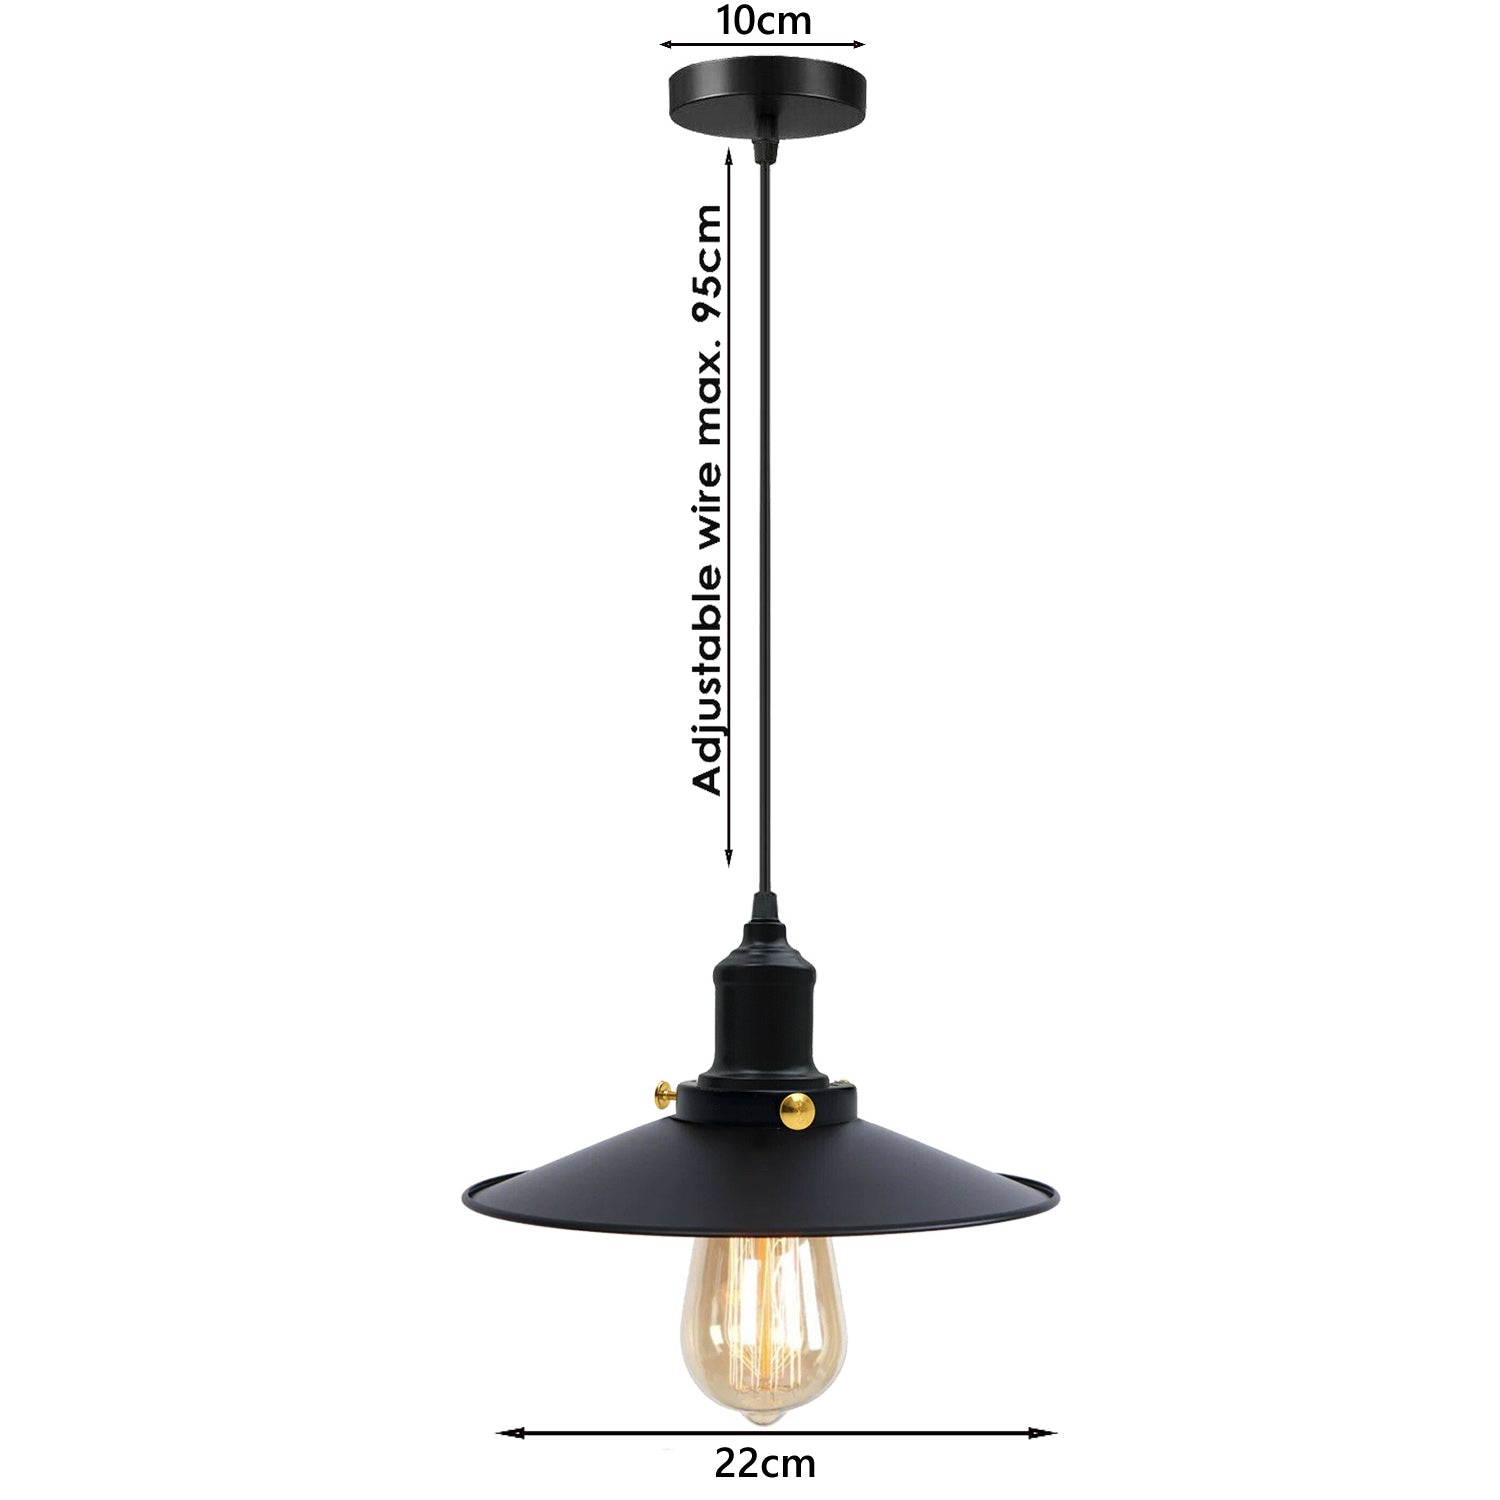 Schwarz-Vintage Pendelleuchte – Industrie Design Deckenlampe Hängelampe Leuchte Retro